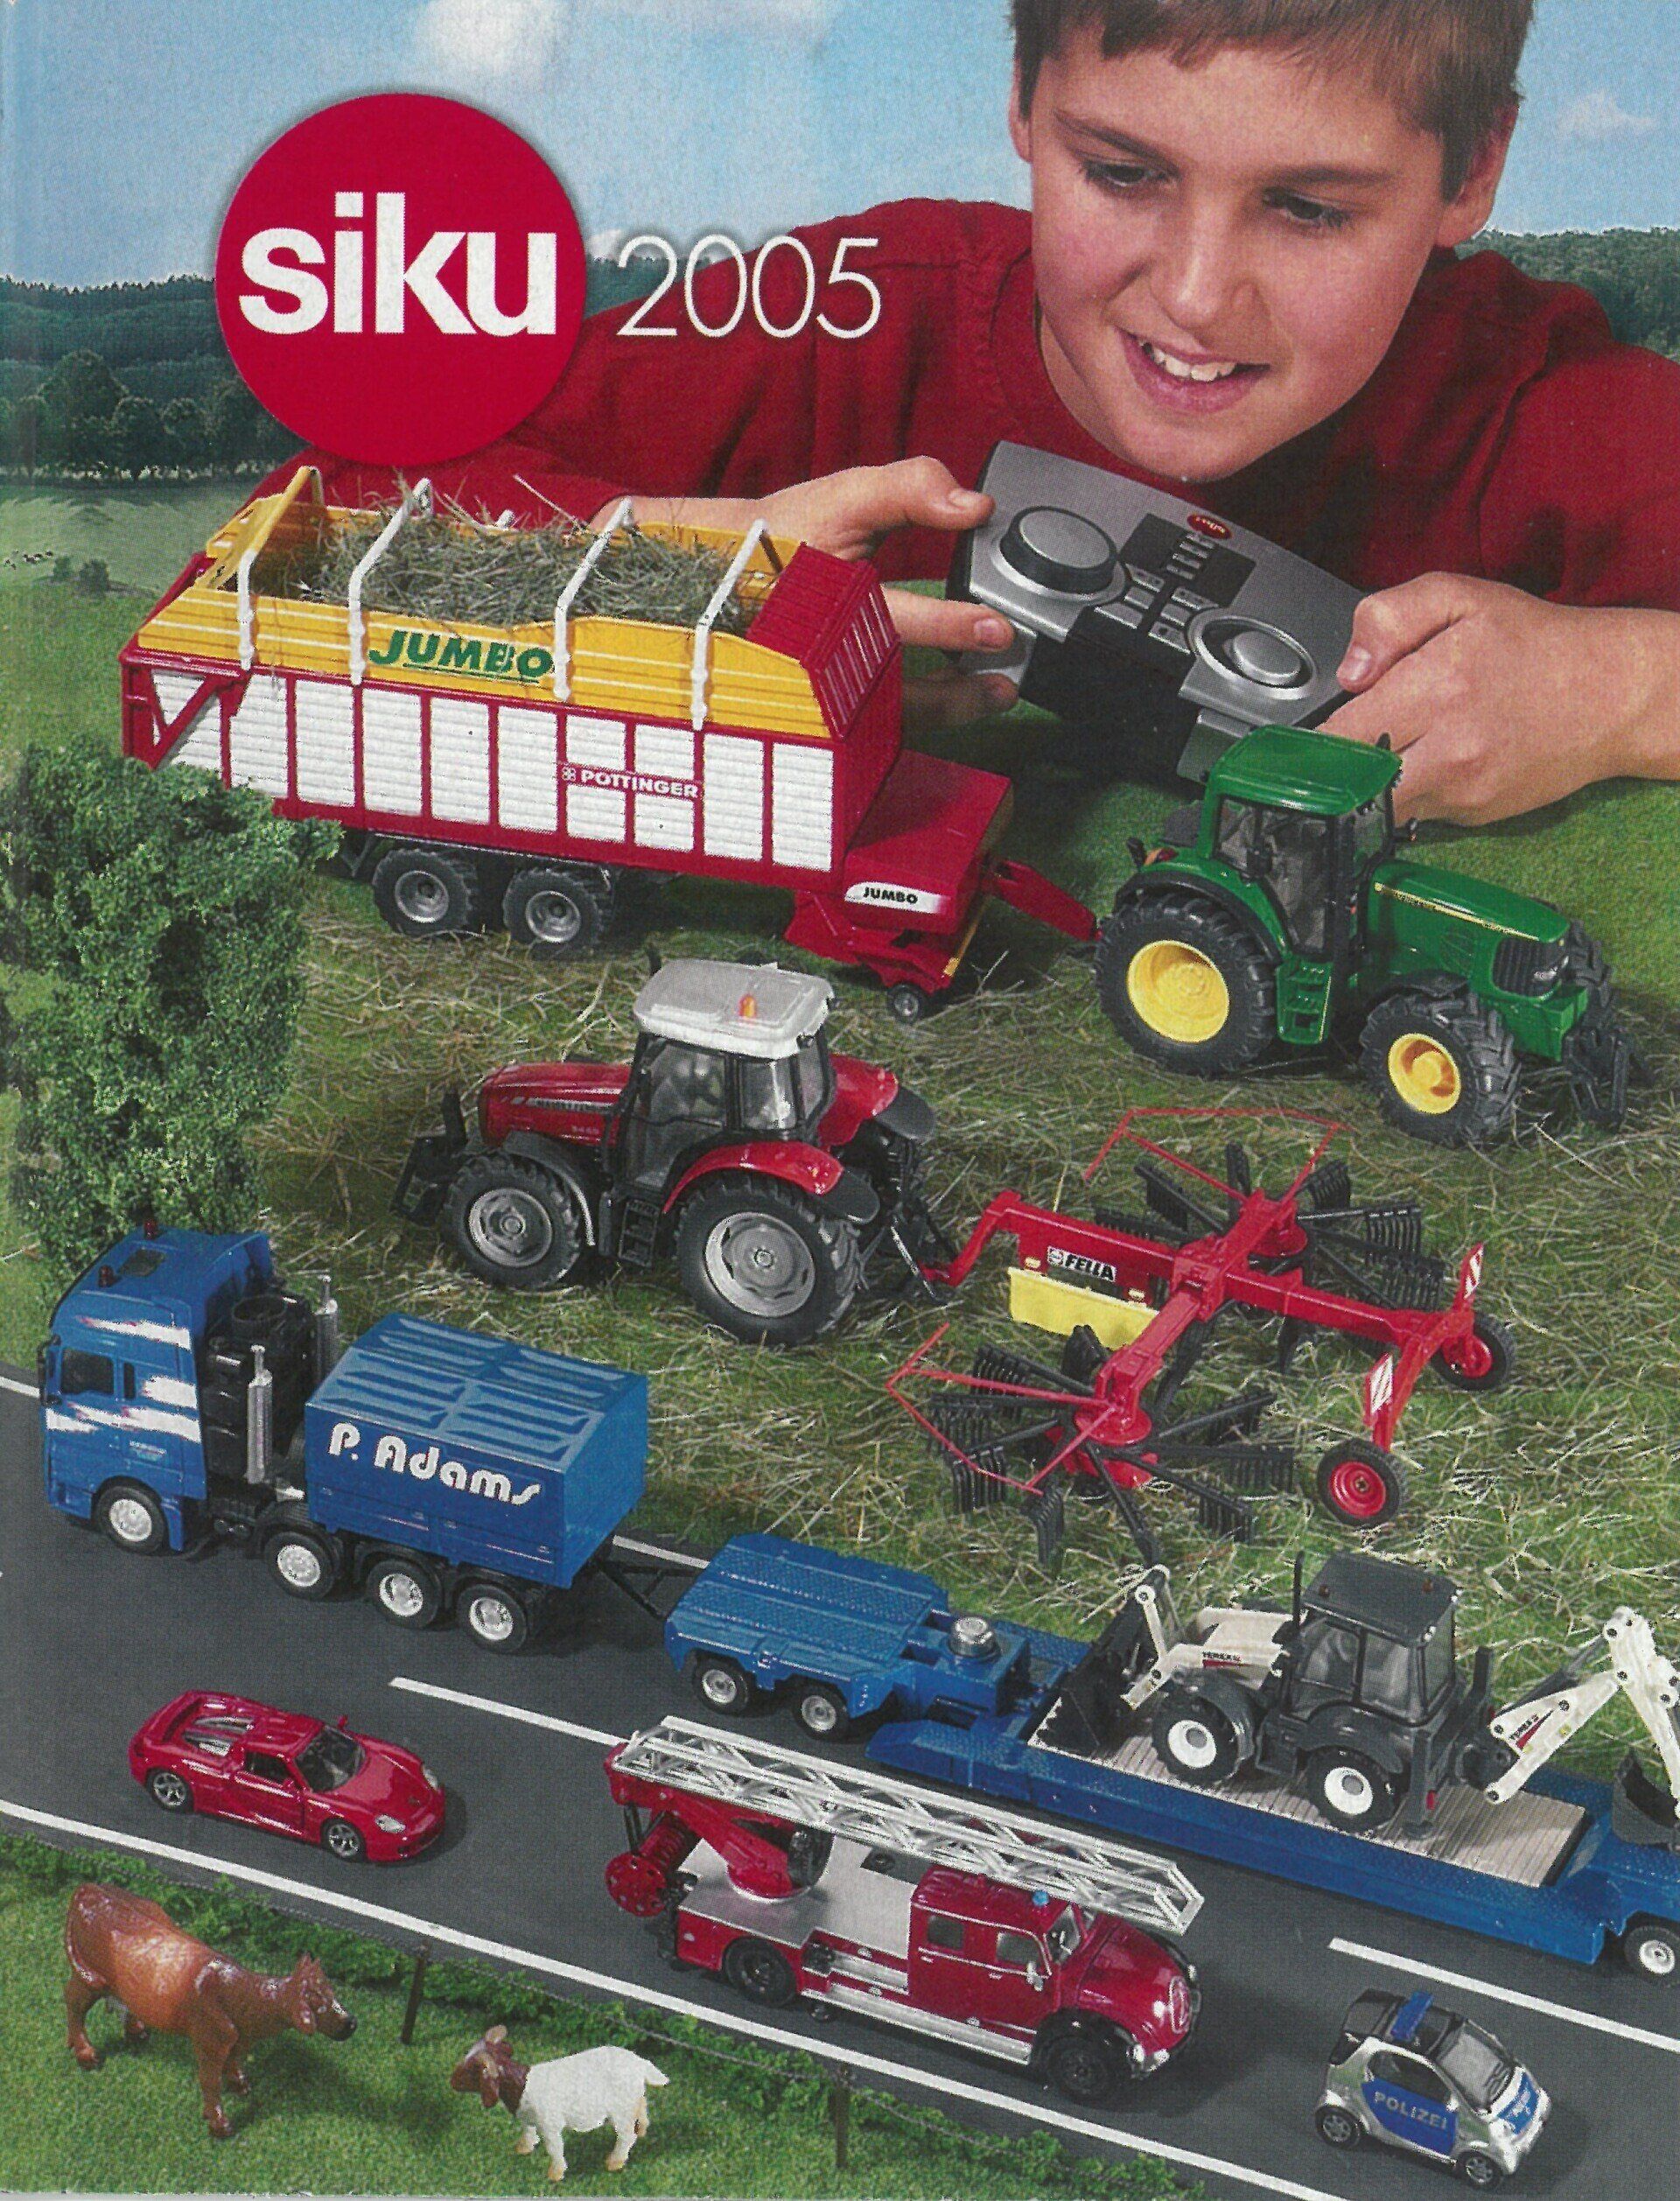 Siku catalogue 2005